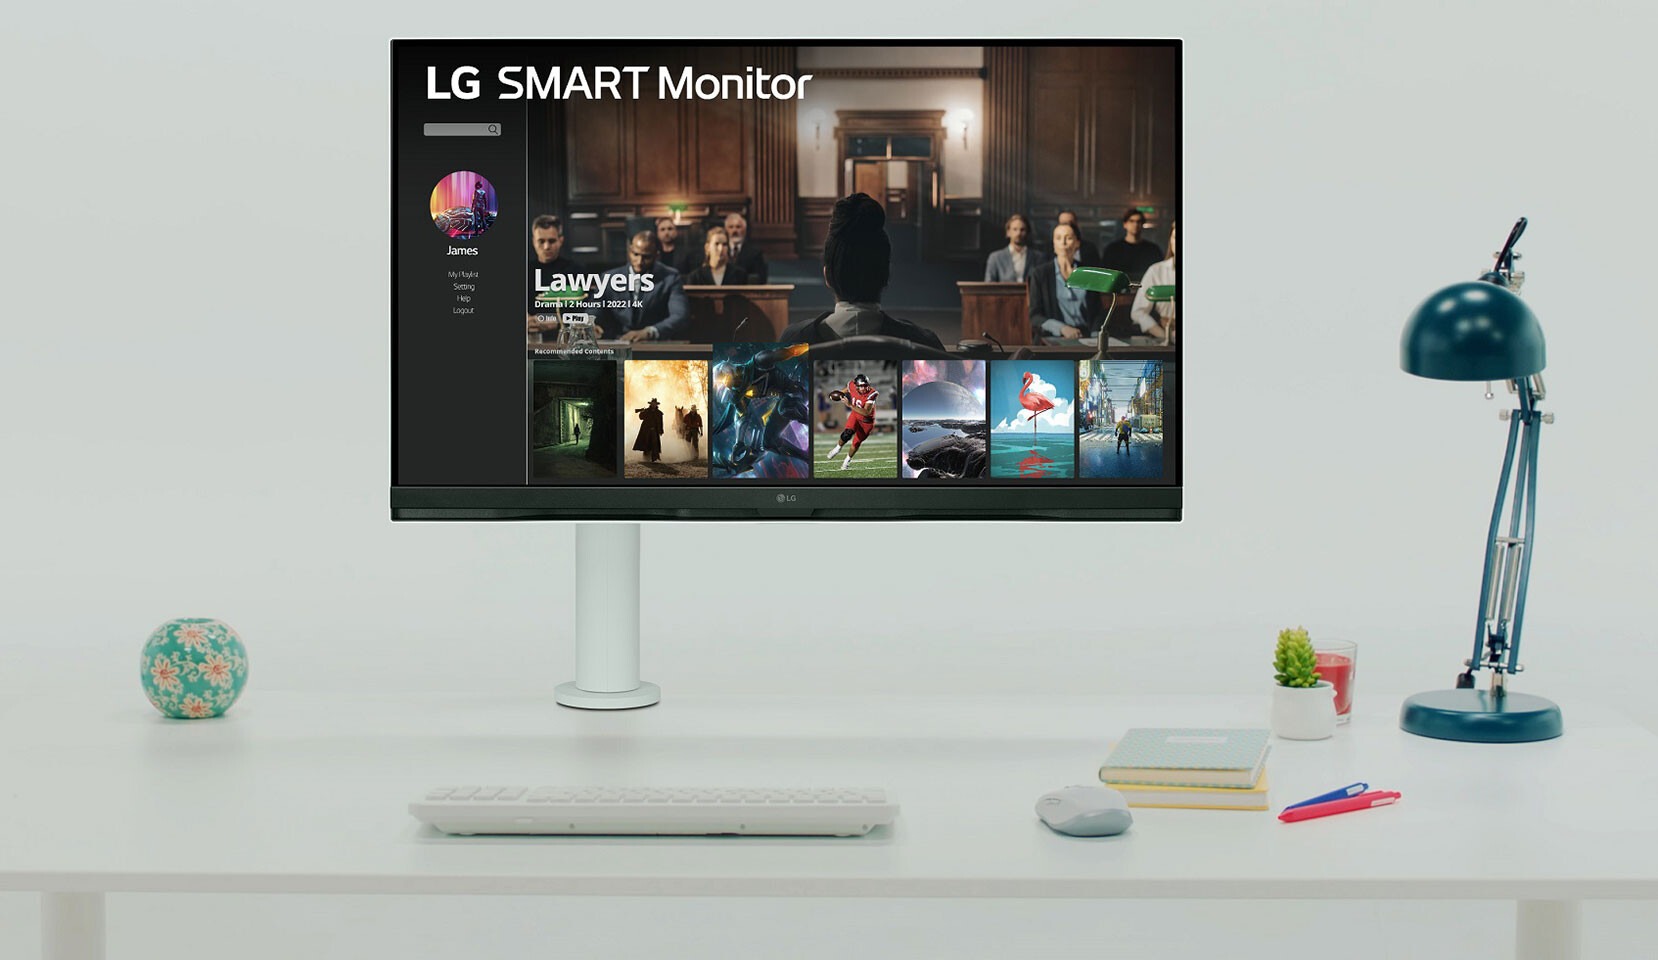 LG impressionne avec son nouveau moniteur OLED 4K atteignant 480 Hz